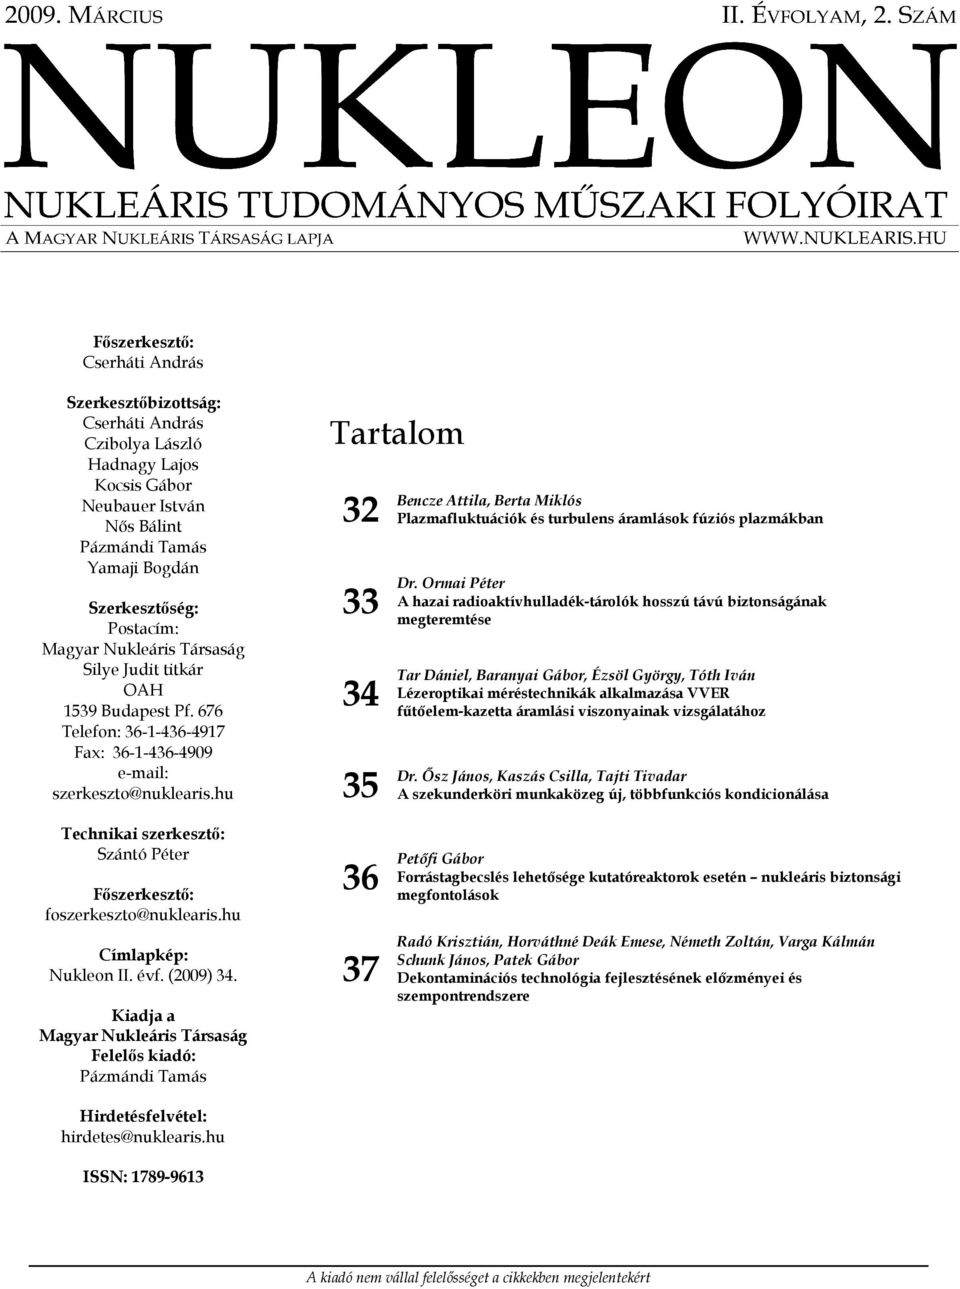 hu Technikai szerkesztő: Szántó Péter Főszerkesztő: foszerkeszto@nuklearis.hu Címlapkép: Nukleon II. évf. (2009) 34.